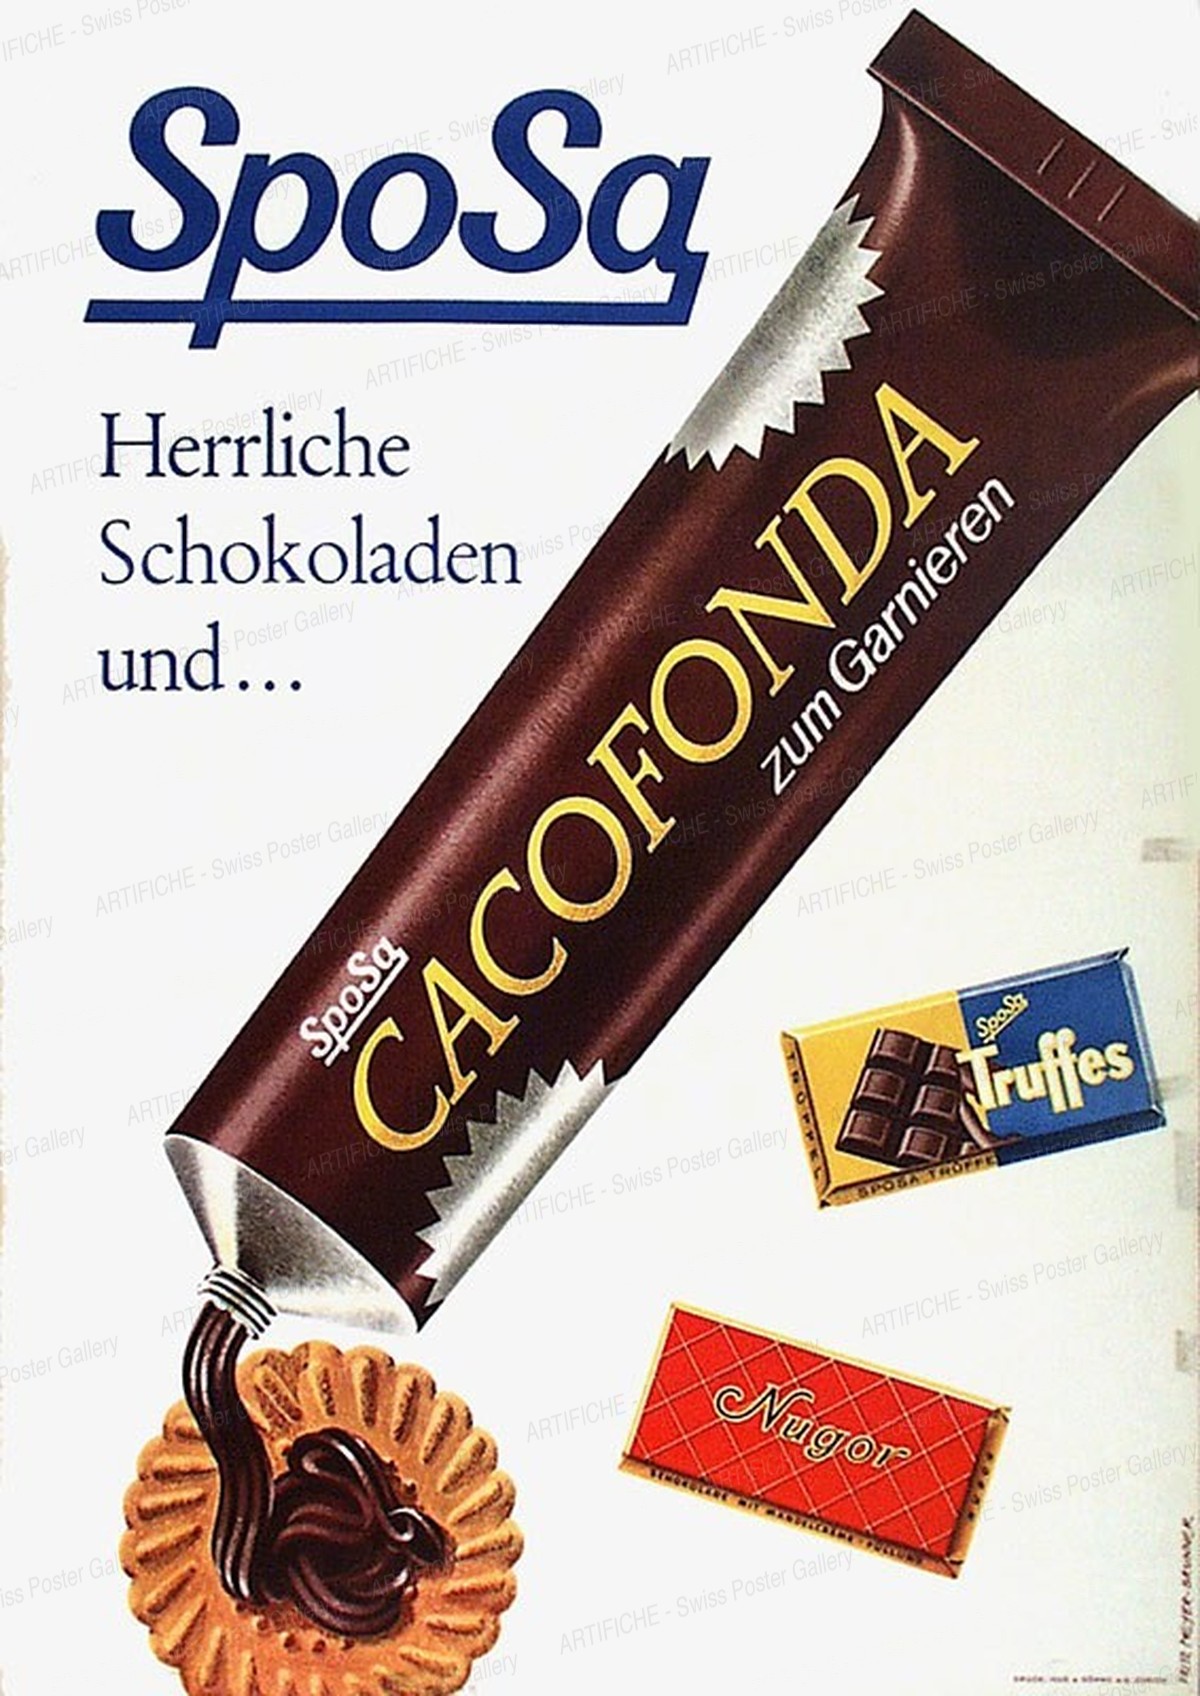 SPOSA Herrliche Schokoladen und… CACOFONDA, Fritz Meyer-Brunner